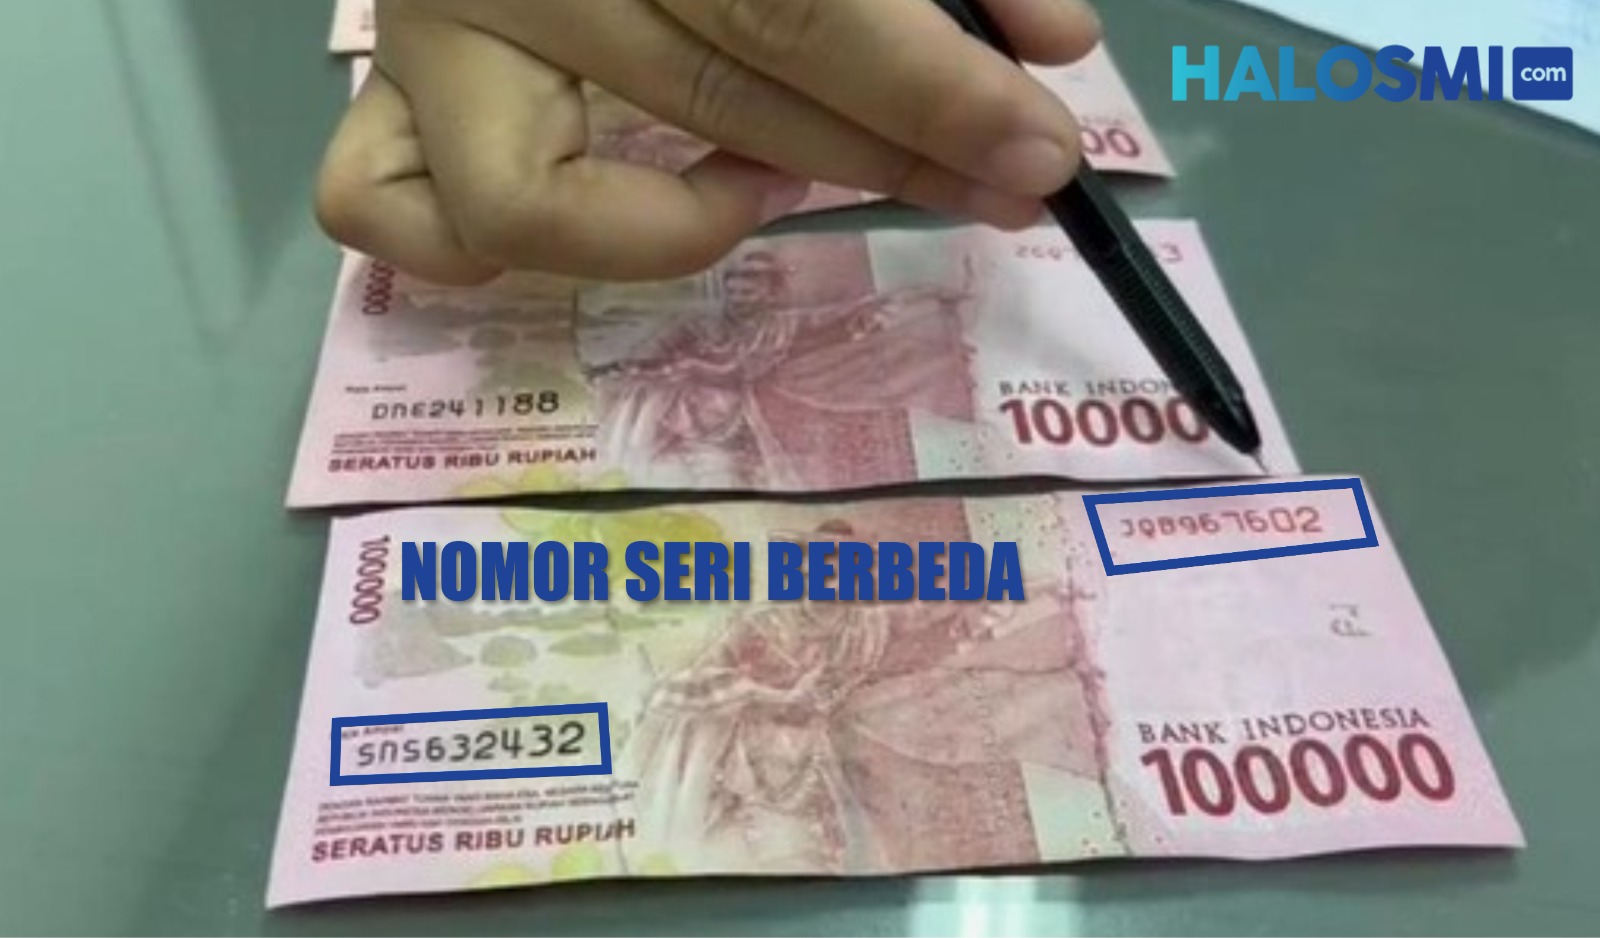 Ciri-ciri uang mutilasi yang memiliki dua nomor seri berbeda dan terdapat bekas sambungan pada uang. Foto: Nuria Ariawan/HALOSMI.